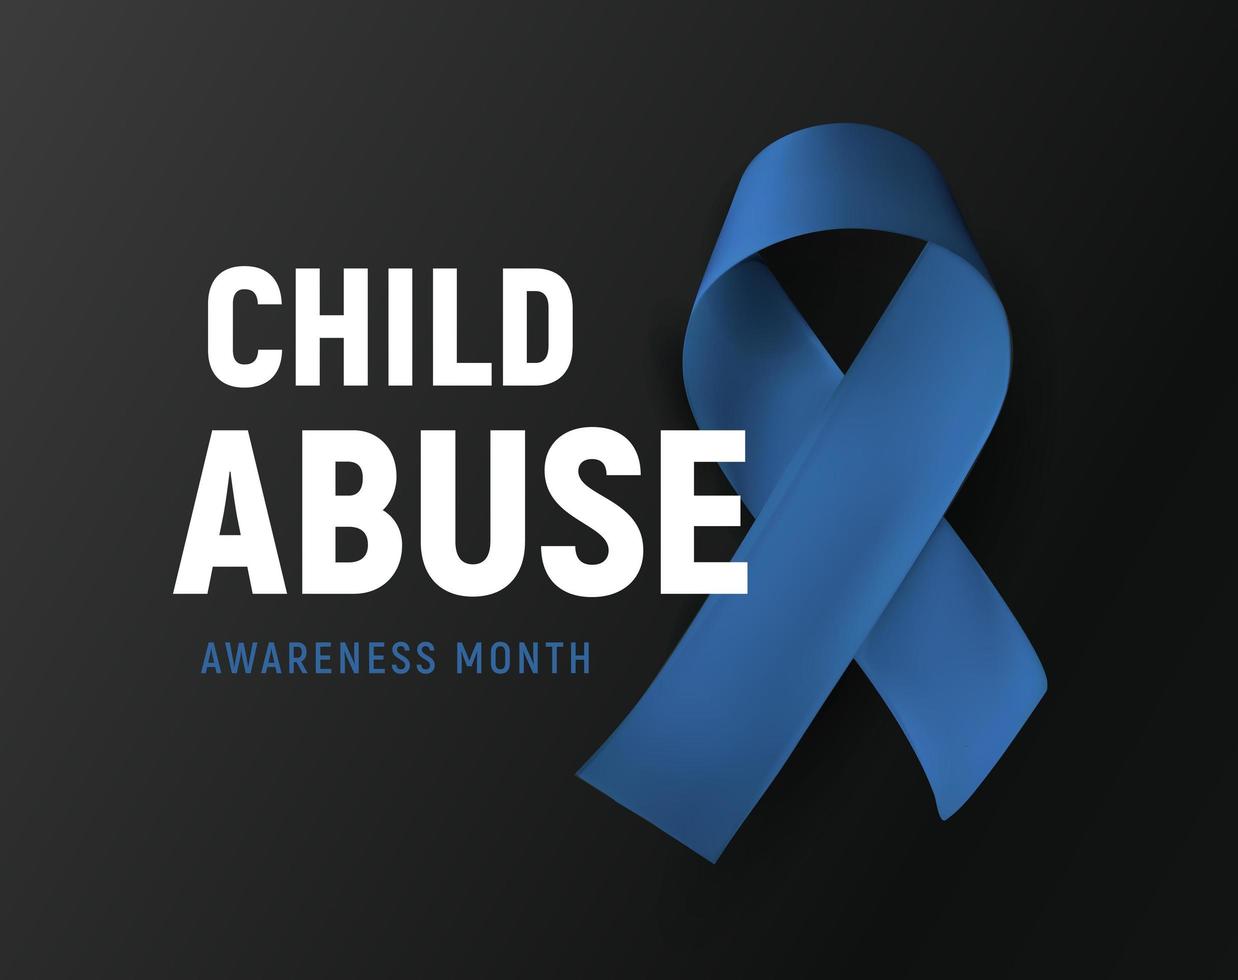 månad för medvetenhet om barnmisshandel, vektorlogotyp, symbol för förebyggande av våld för barn, blått band på svart bakgrund, vektorillustration vektor